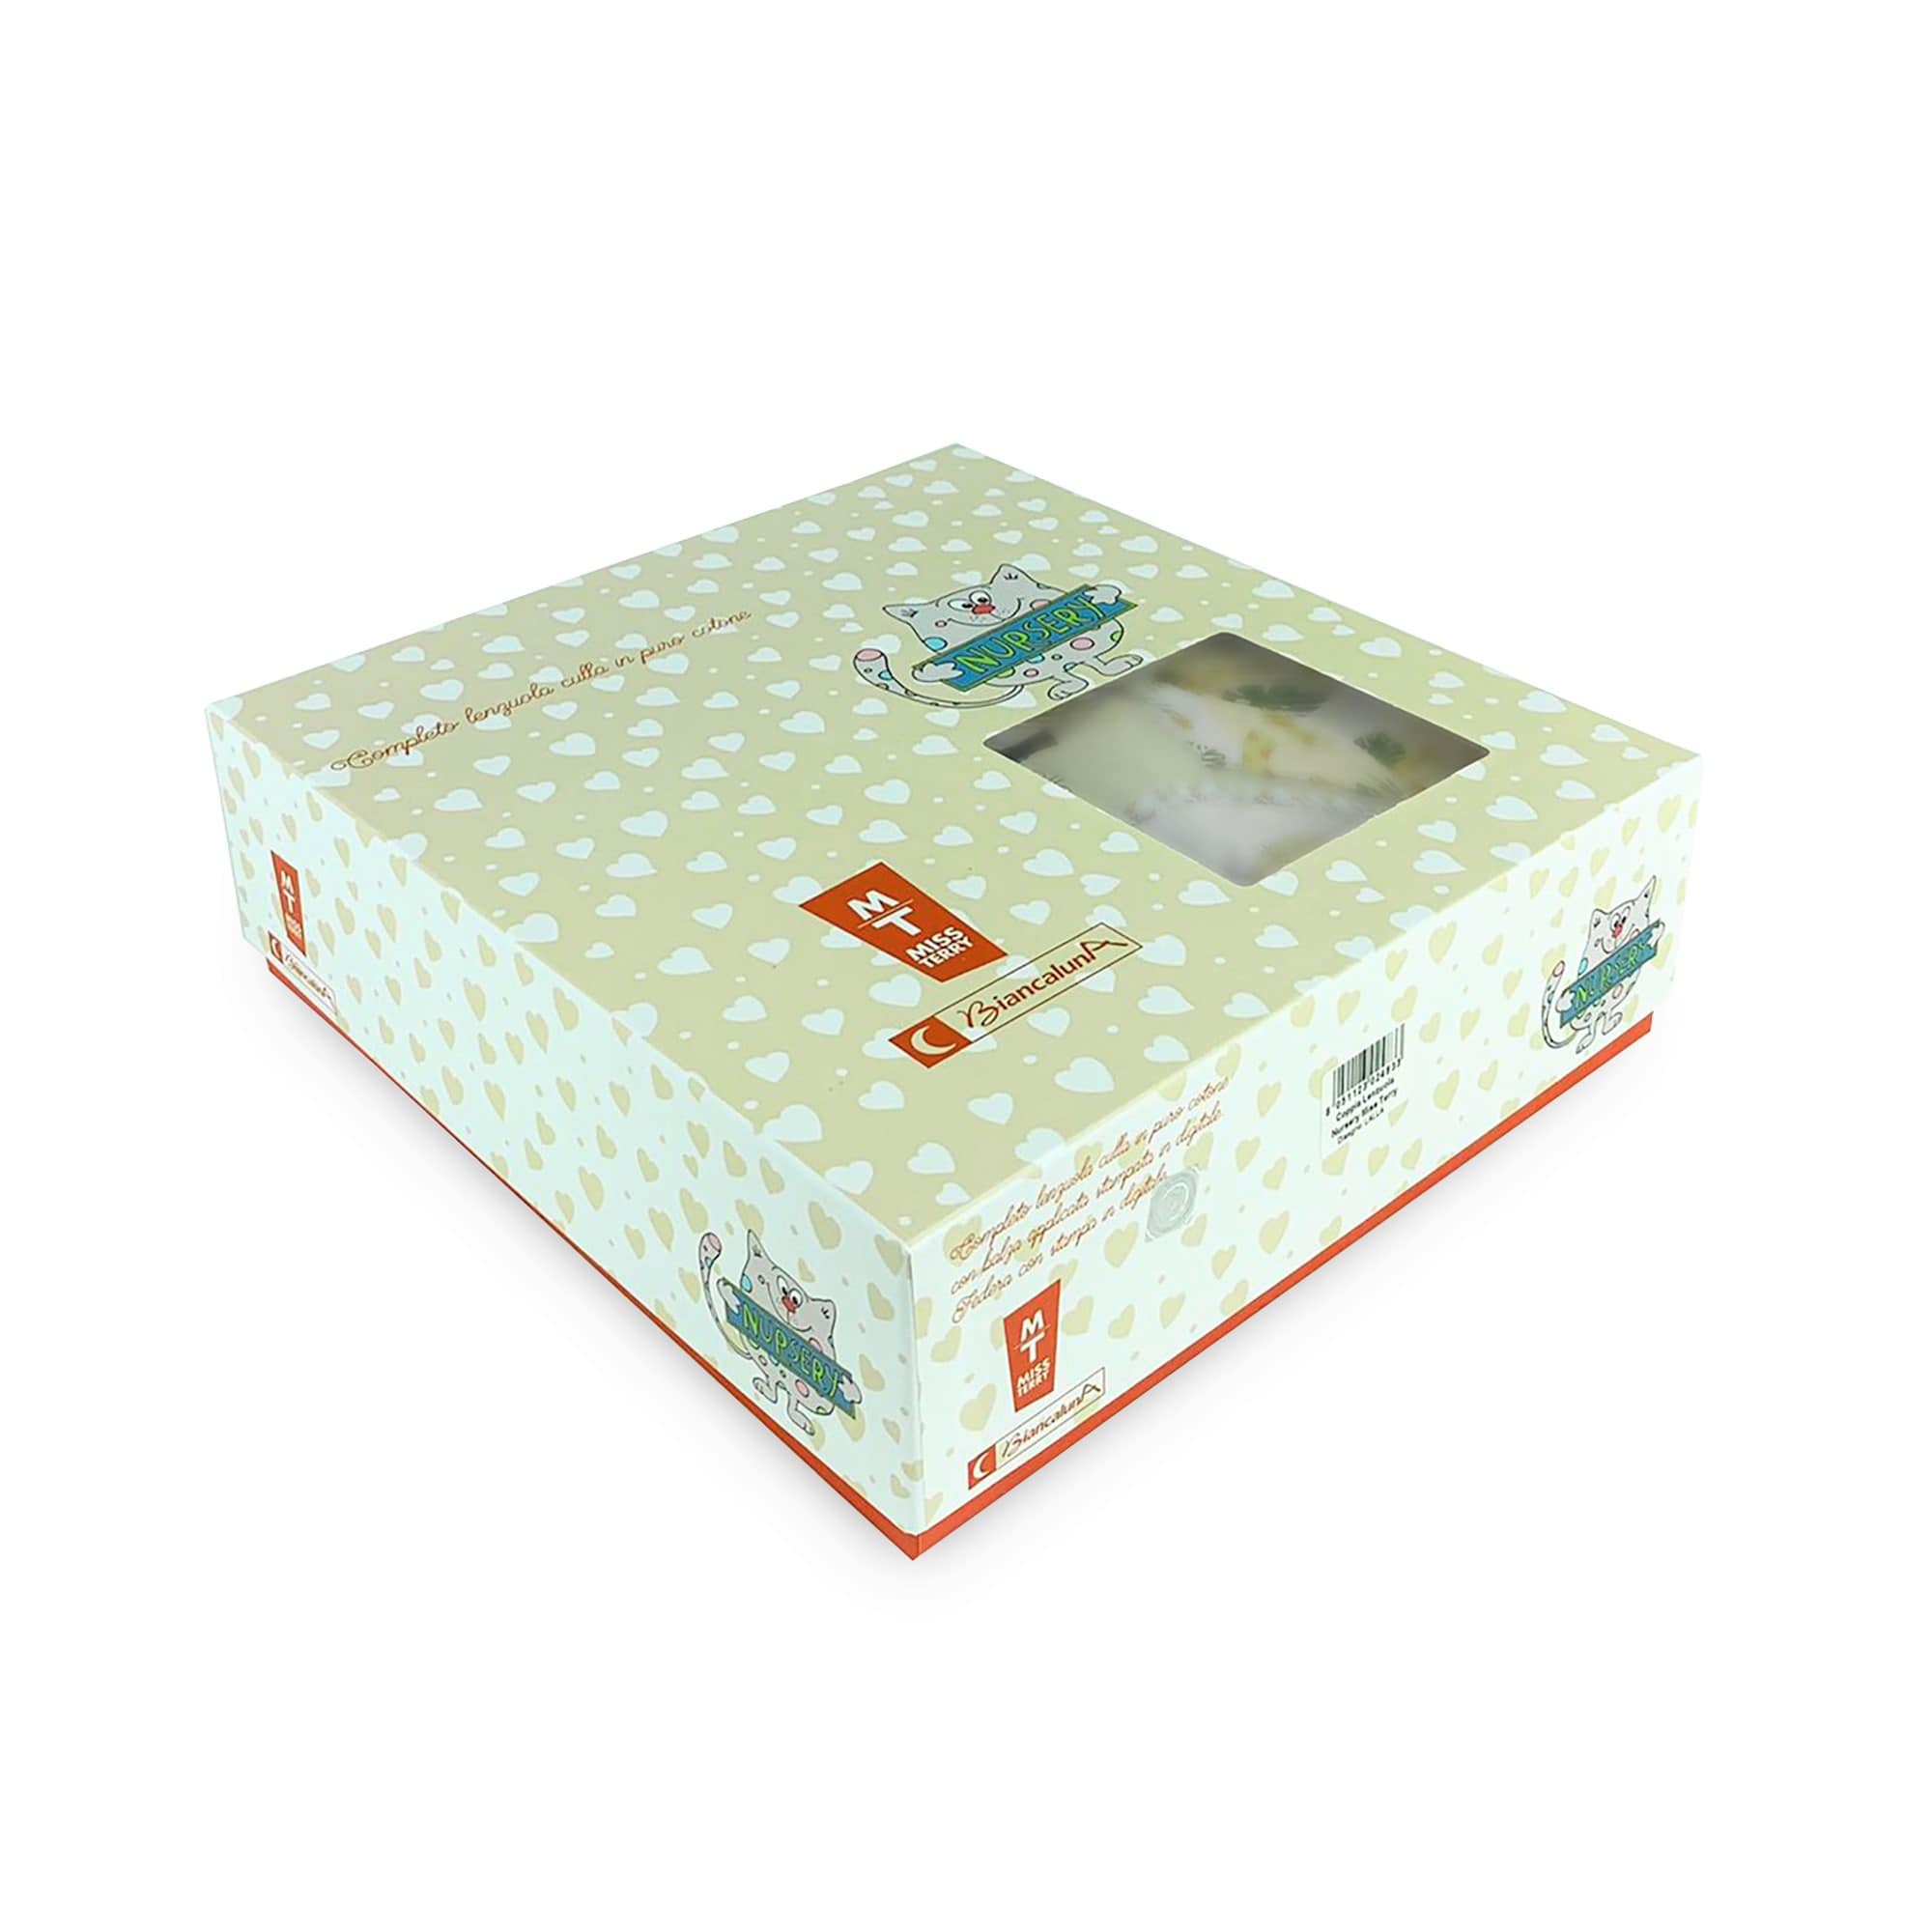 Completo lenzuola culla lettino in cotone Biancaluna stampa digital set 3pz 4156